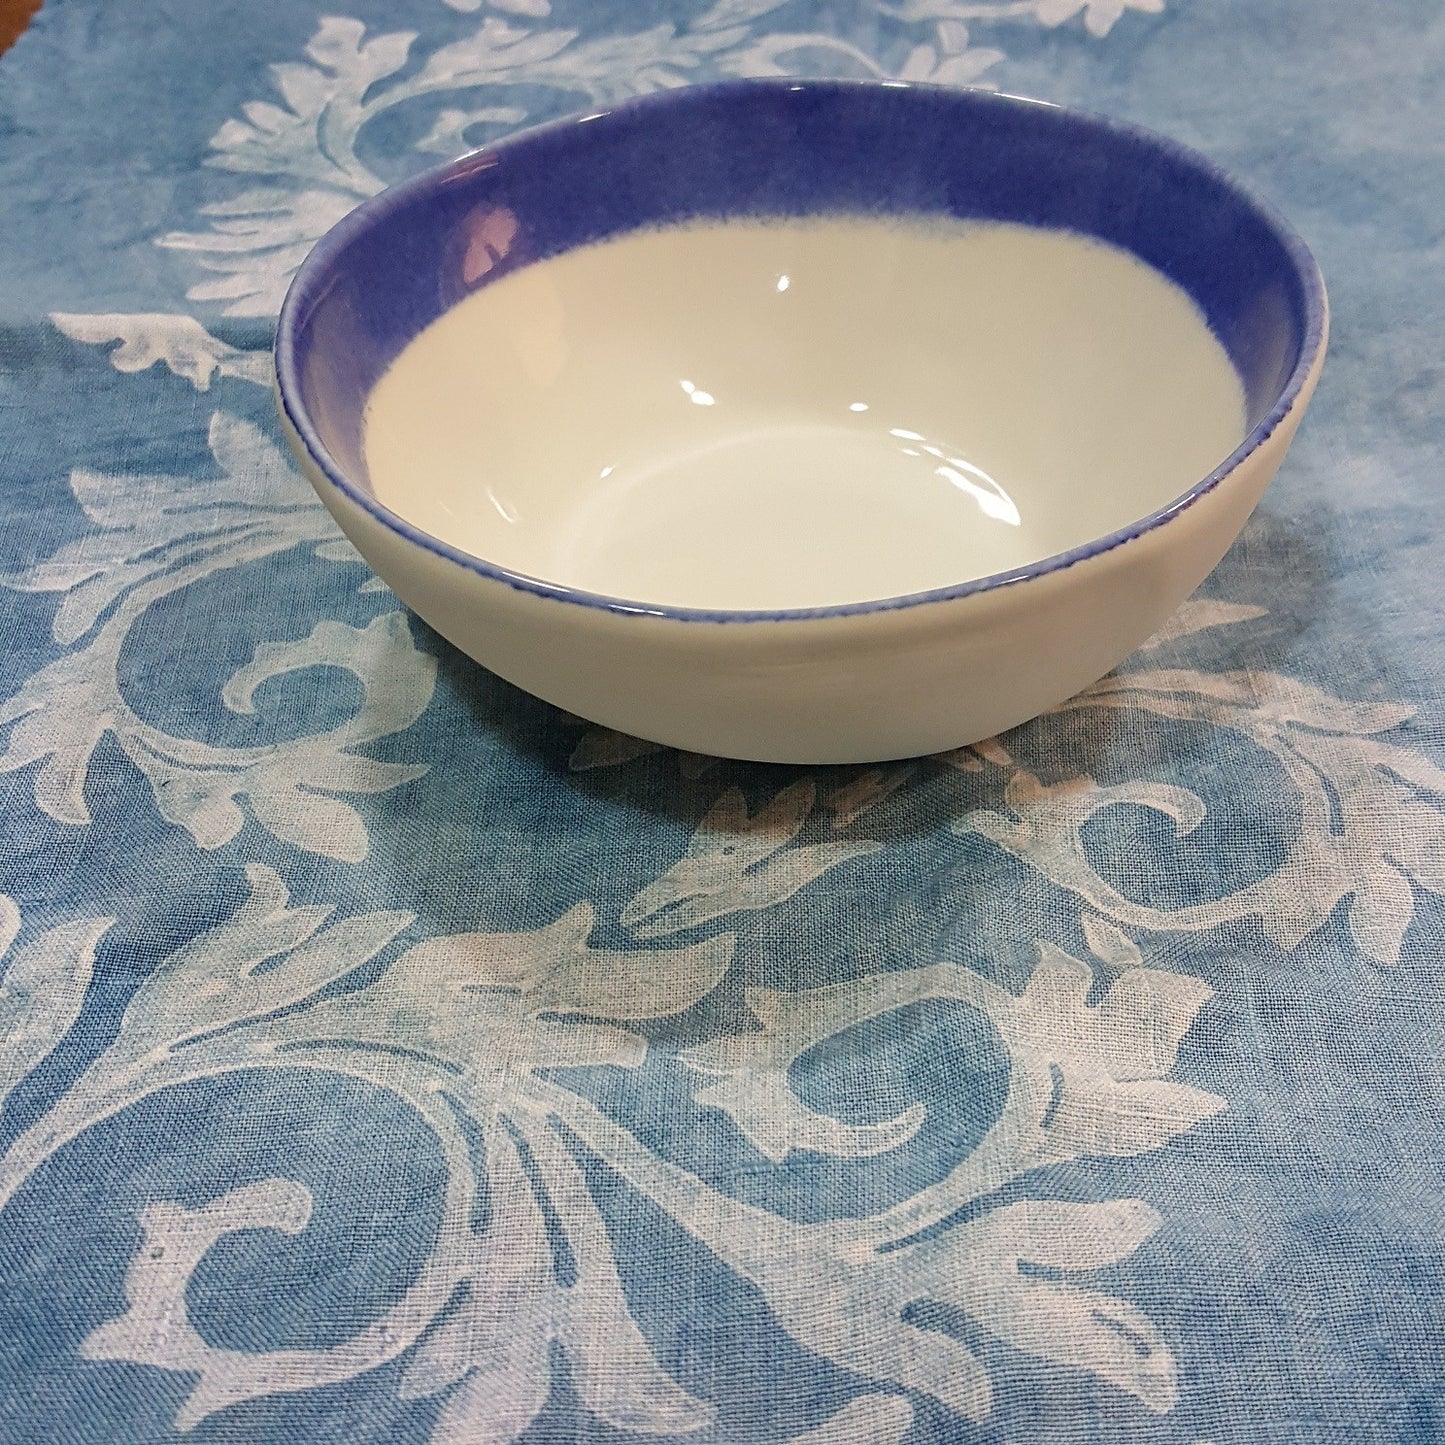 Handmade porcelain bowl with rim.